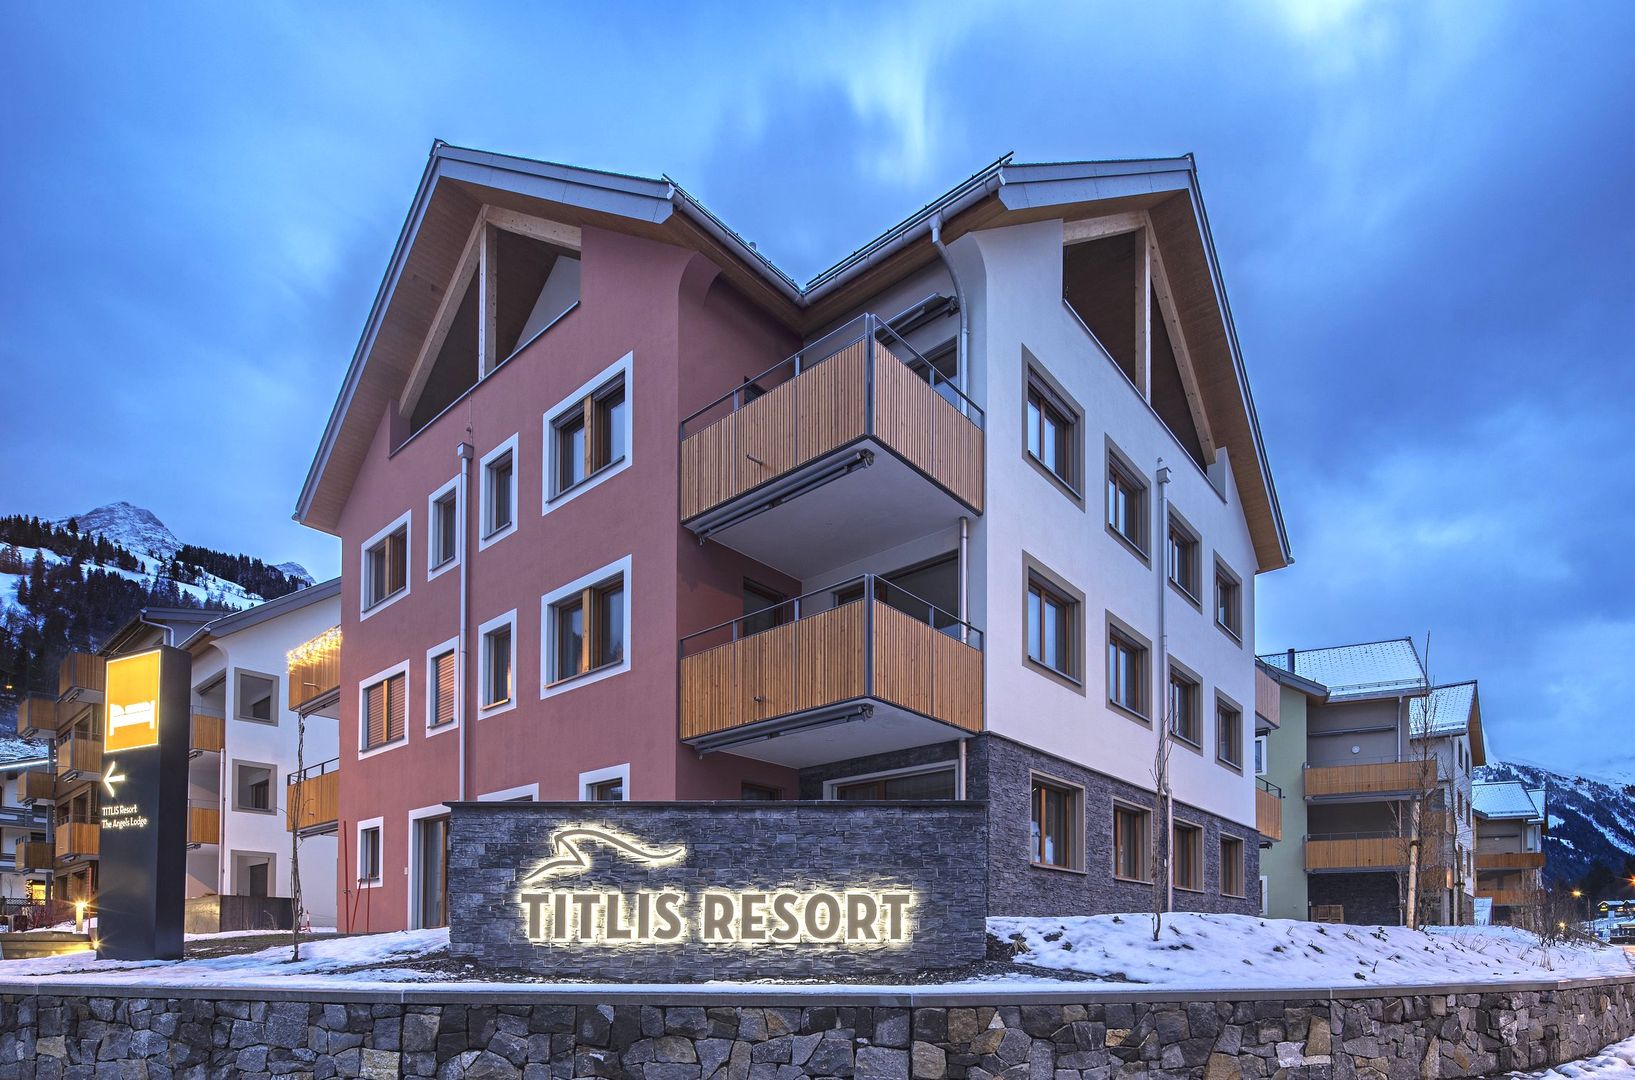 Titlis Resort in Engelberg, Titlis Resort / Schweiz